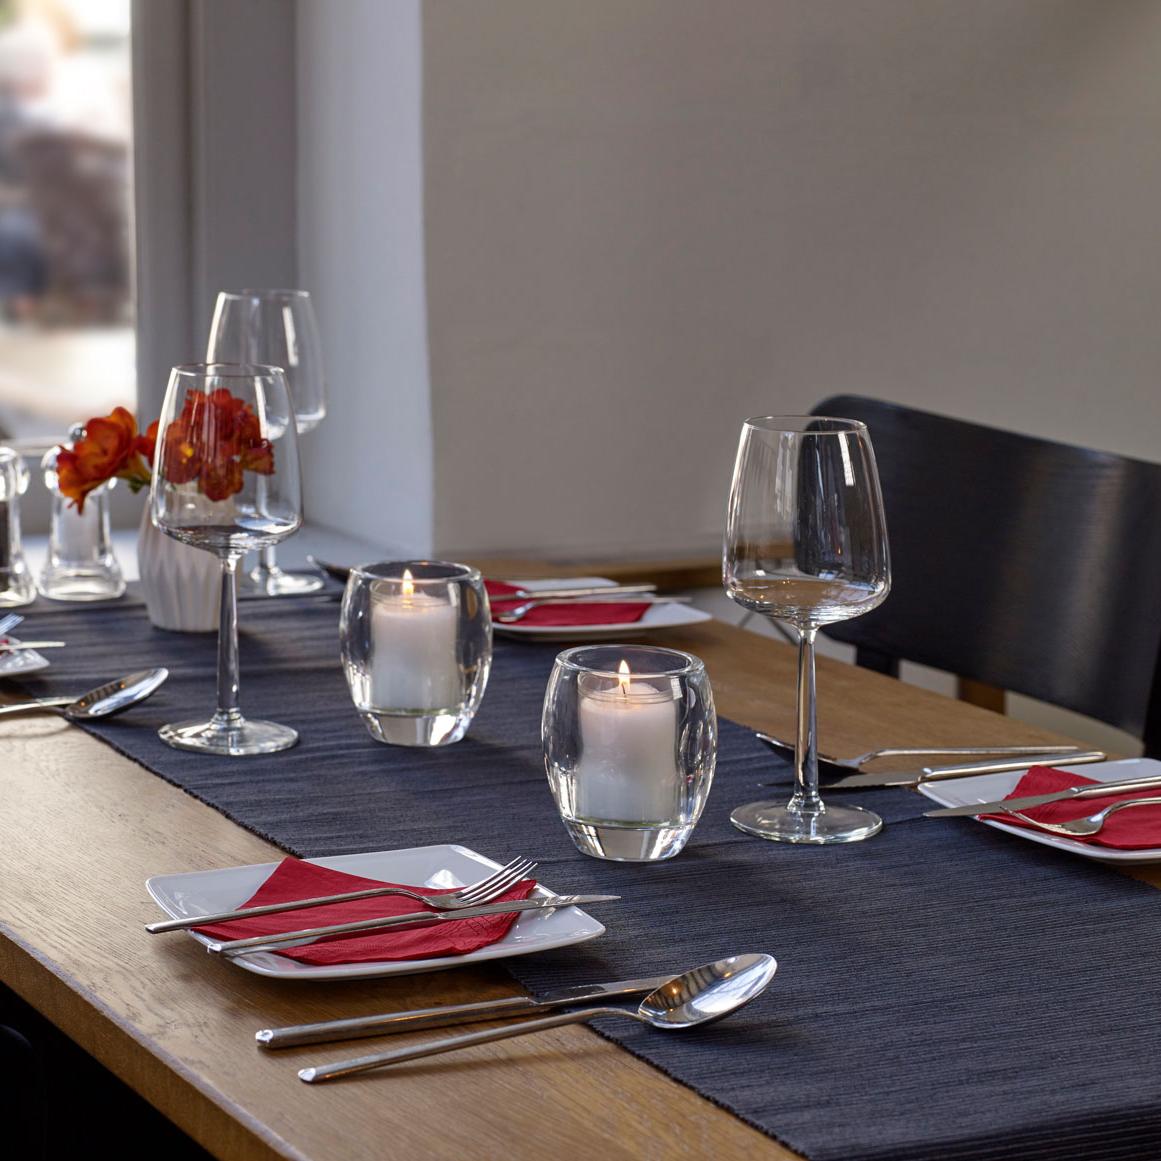 Elegante Tischdeko in einem Restaurant. Anspruchsvoll gestaltet mit weißen Tellern und roten Servietten. Auf dem Tisch steht eine weiße Vase mit roten Blumen und leere Weingläser, begleitet von zwei brennenden Relight Kerzen in einem ovalen Glashalter, die eine gemütliche und einladende Stimmung verbreiten.